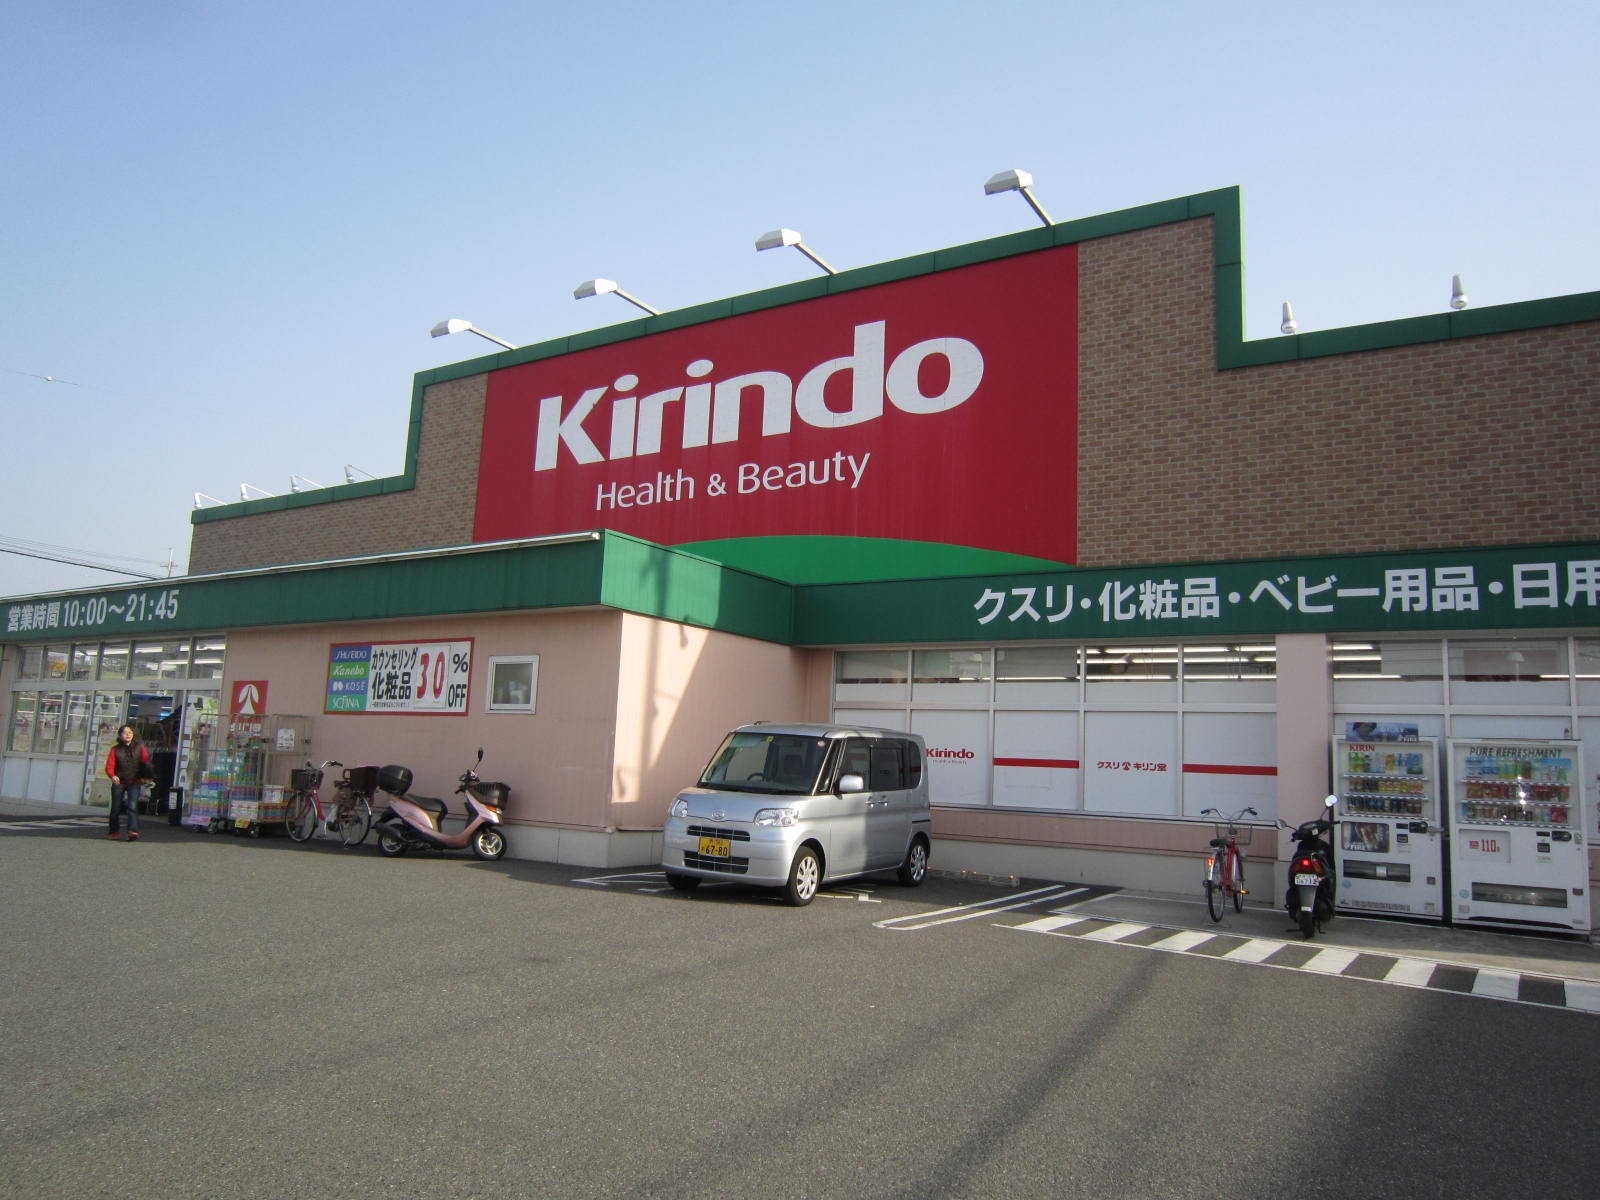 Dorakkusutoa. Kirindo Tosayadai shop 423m until (drugstore)